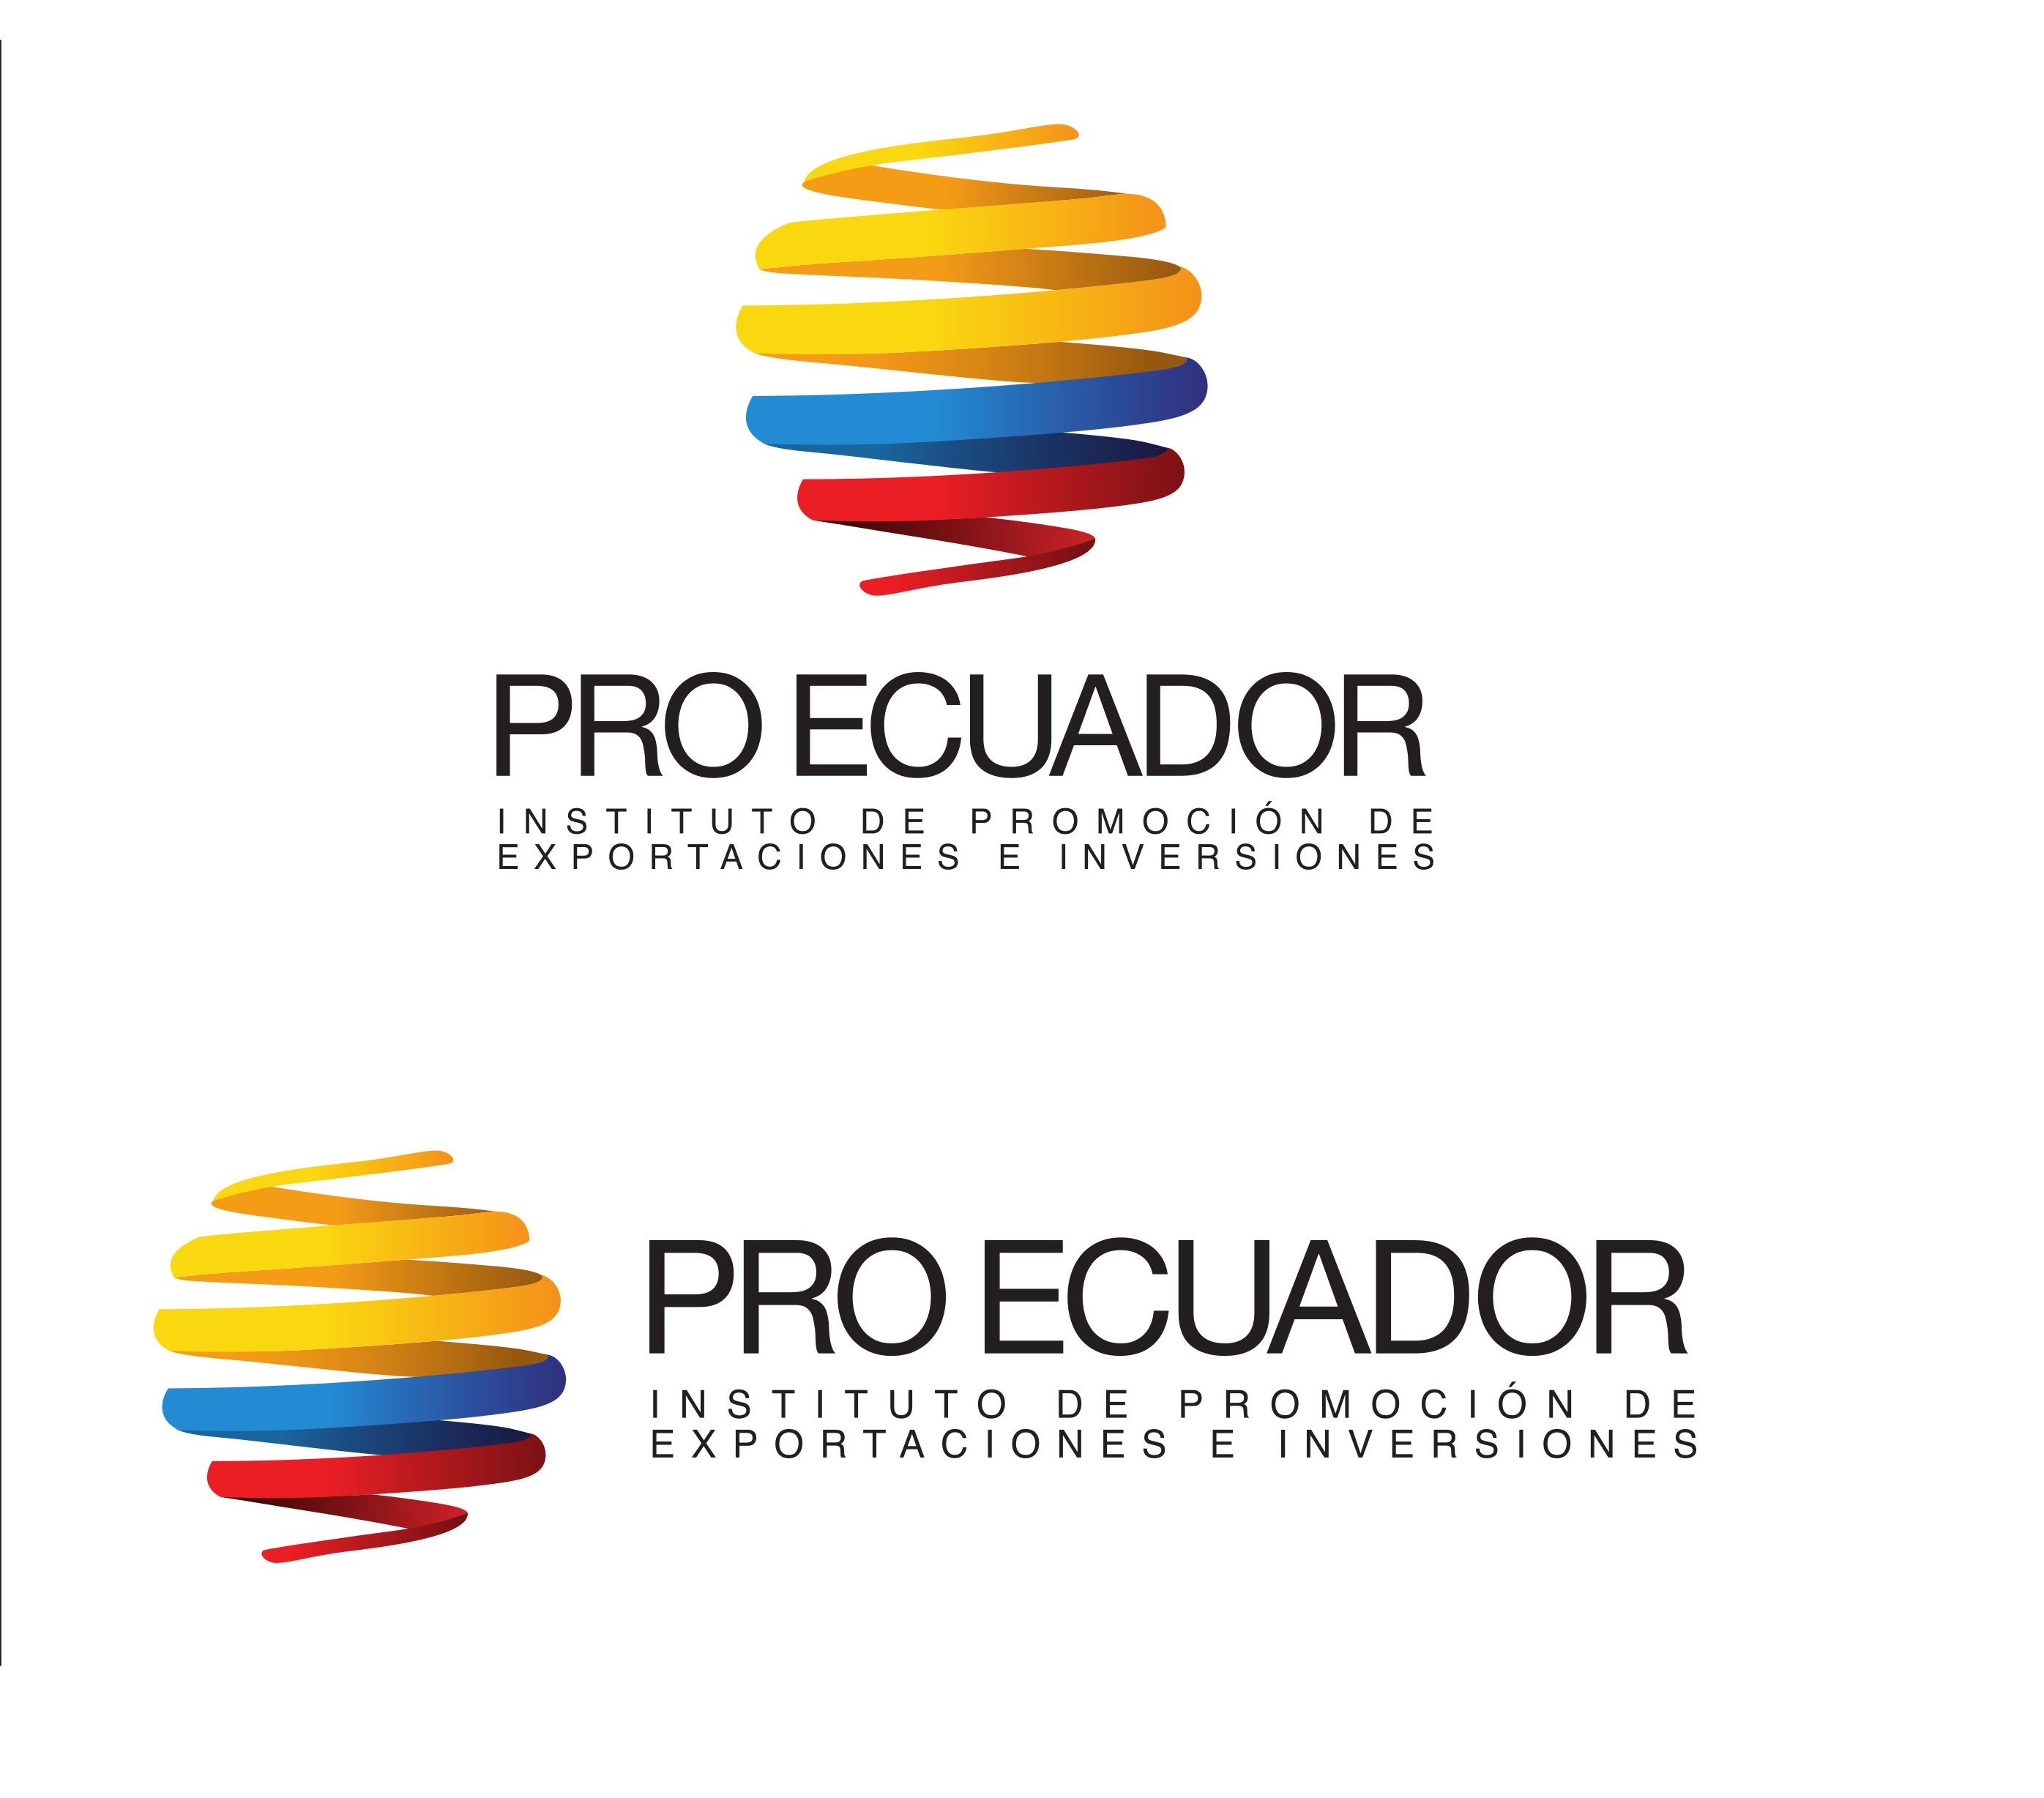 FICHAS DEL ATÚN DEL ECUADOR - PROECUADOR